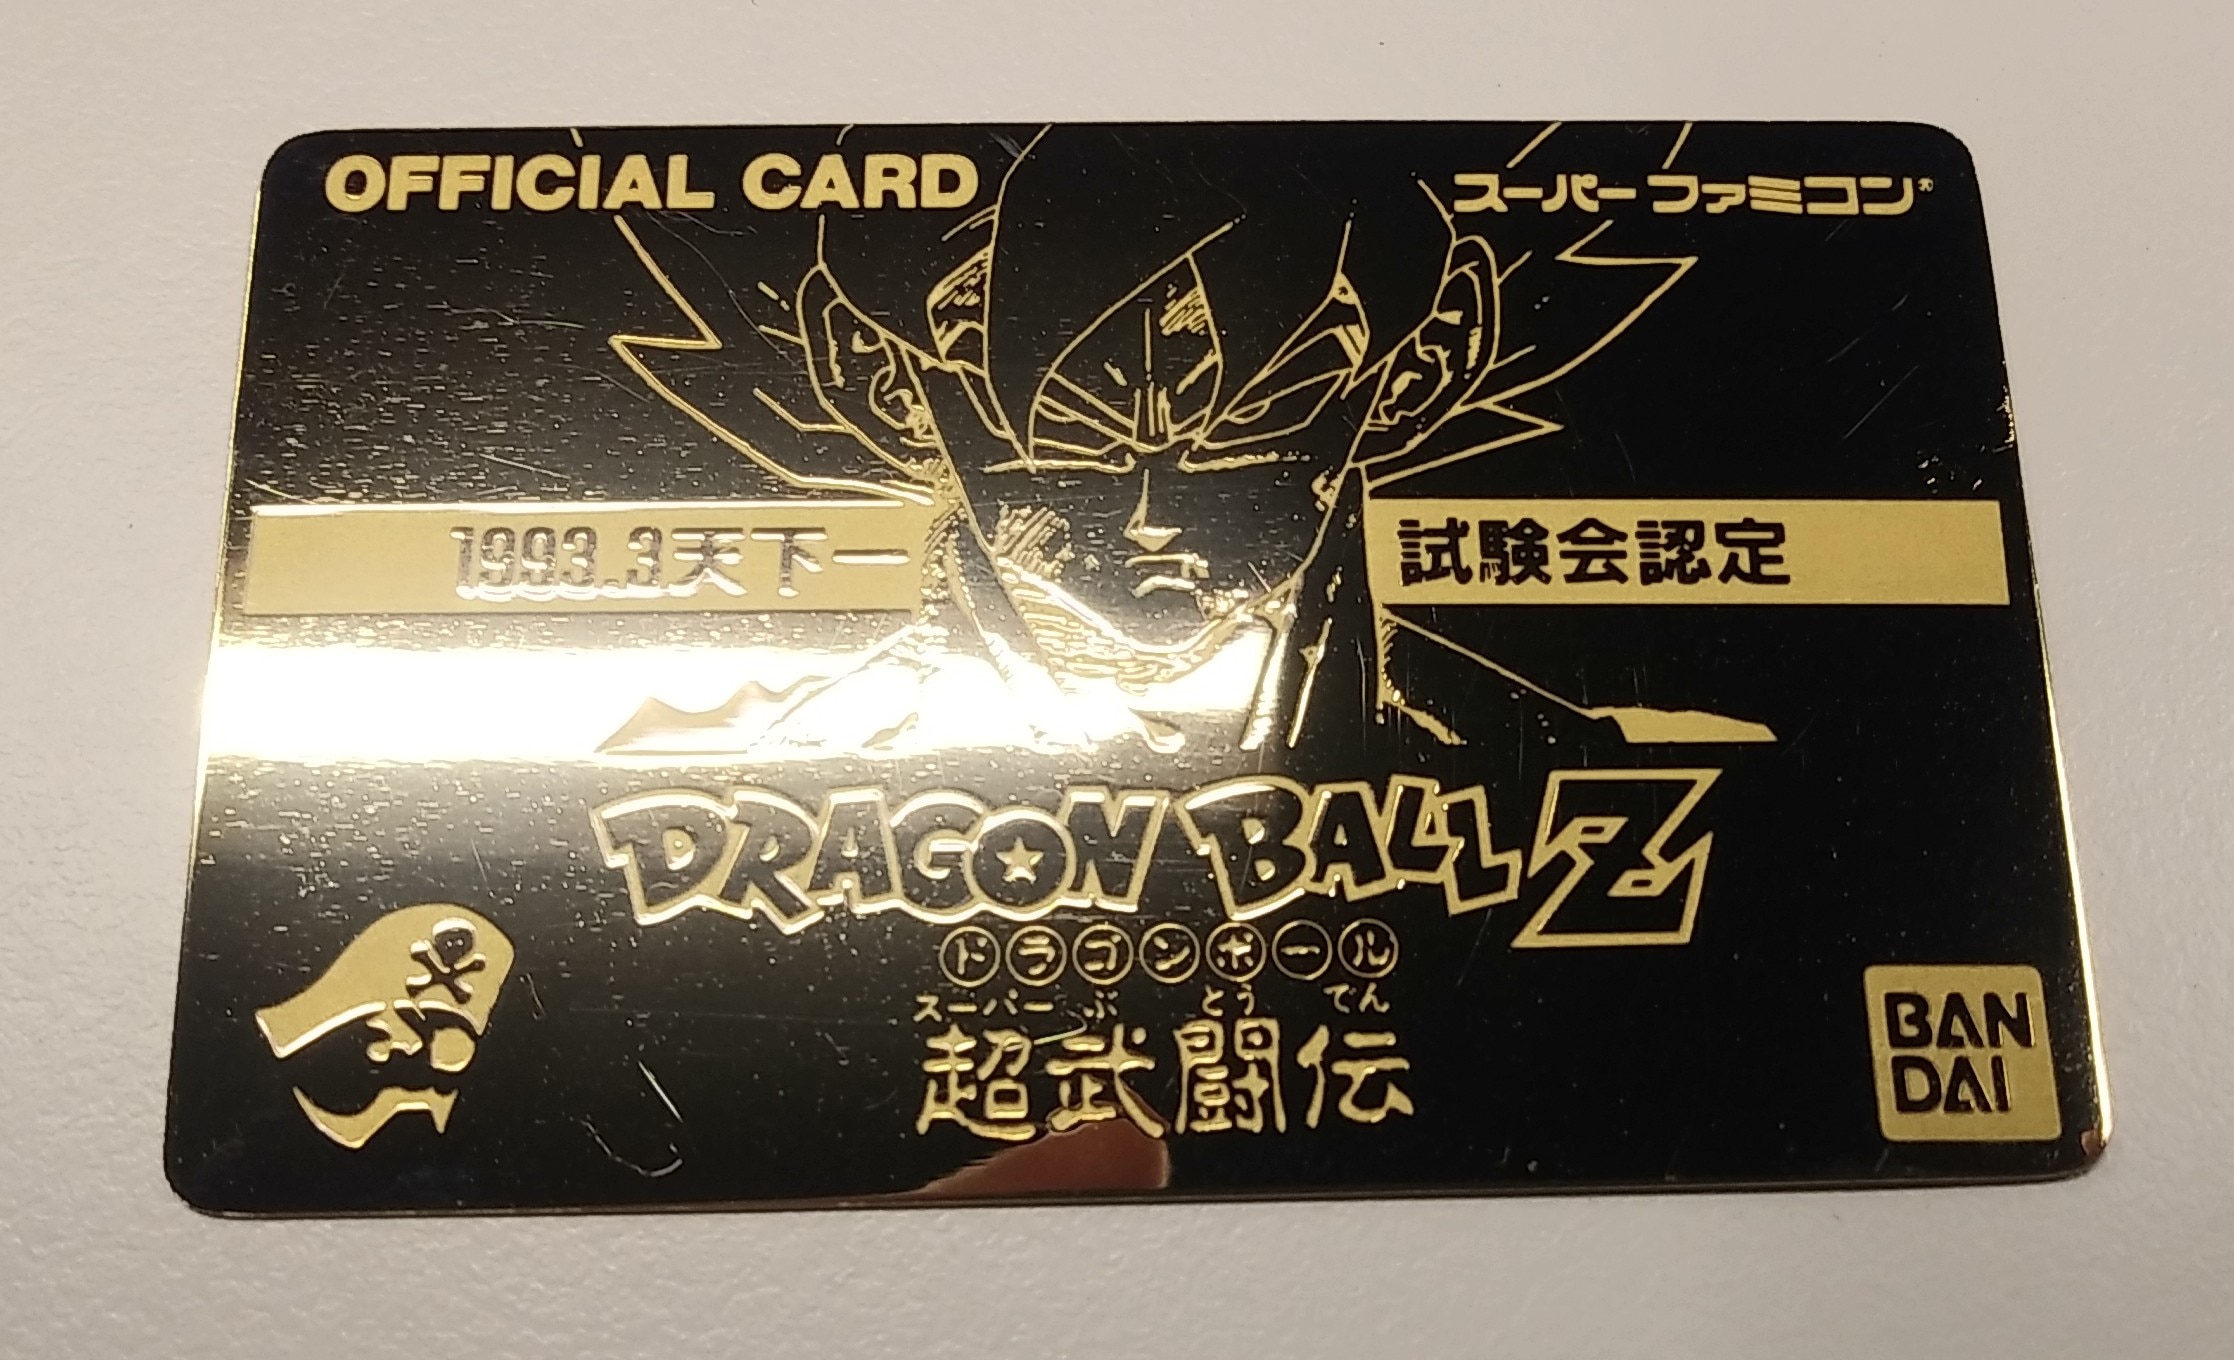 ドラゴンボール カード 1993.3天下一試験会 OFFICIAL CARD | chidori.co